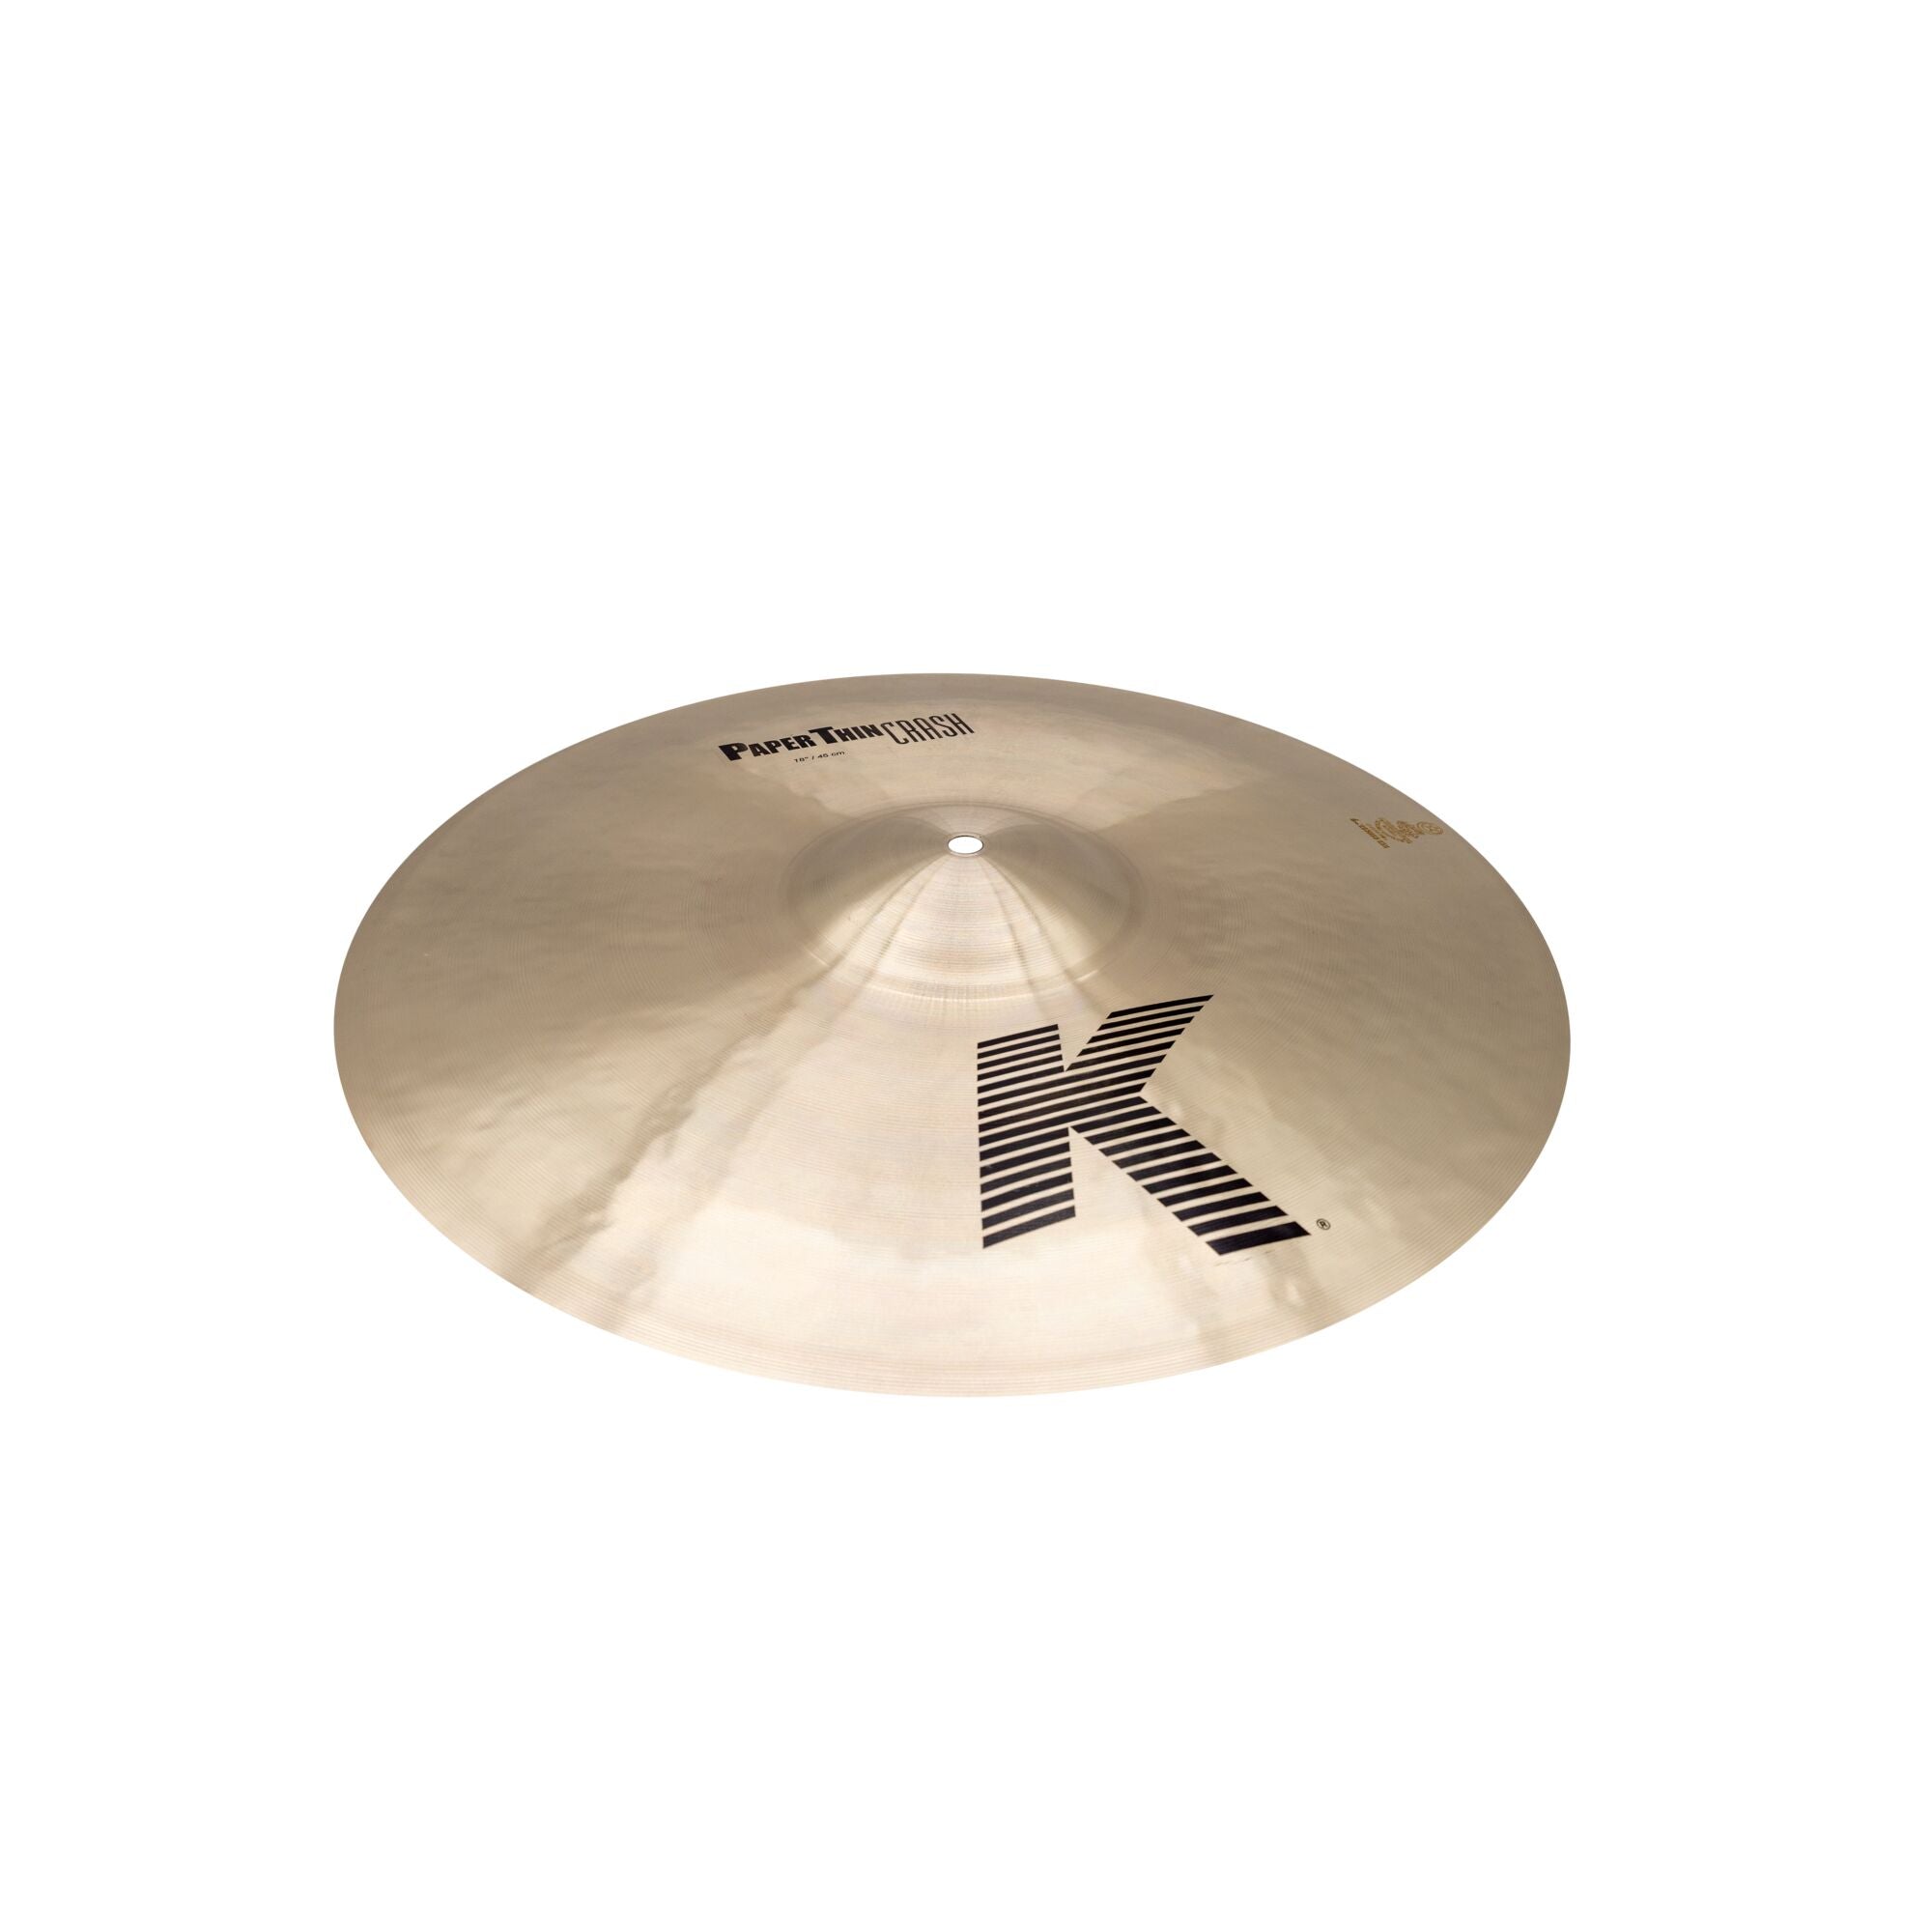 Zildjian | Official Site | Cymbals, Drumsticks & Apparel